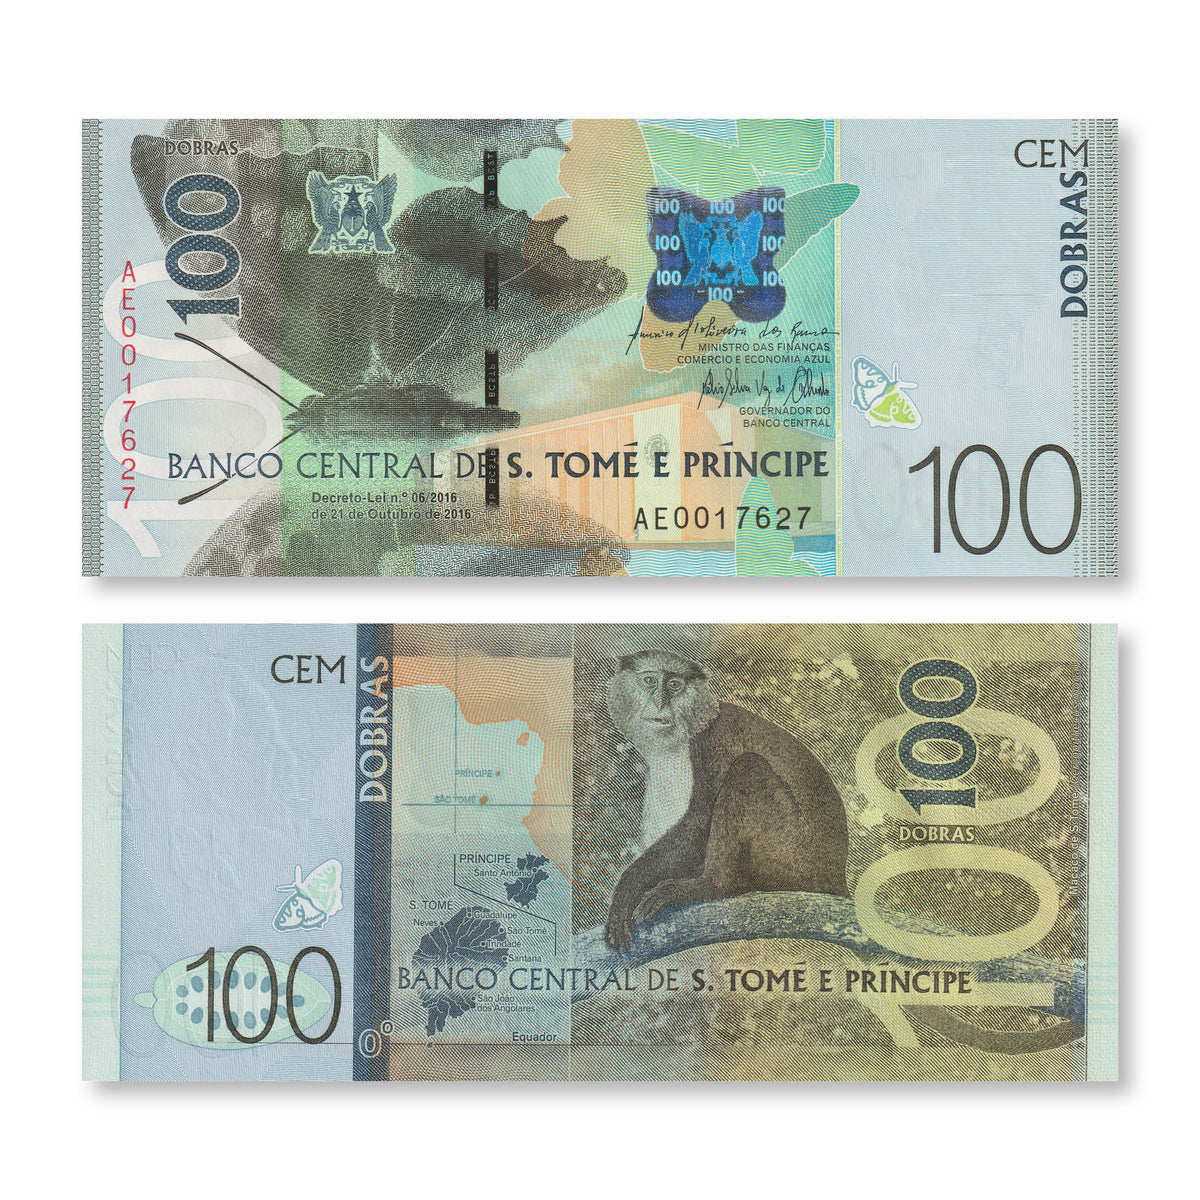 São Tomé & Príncipe 100 Dobras, 2016 (2018), B312a, P74, UNC - Robert's World Money - World Banknotes